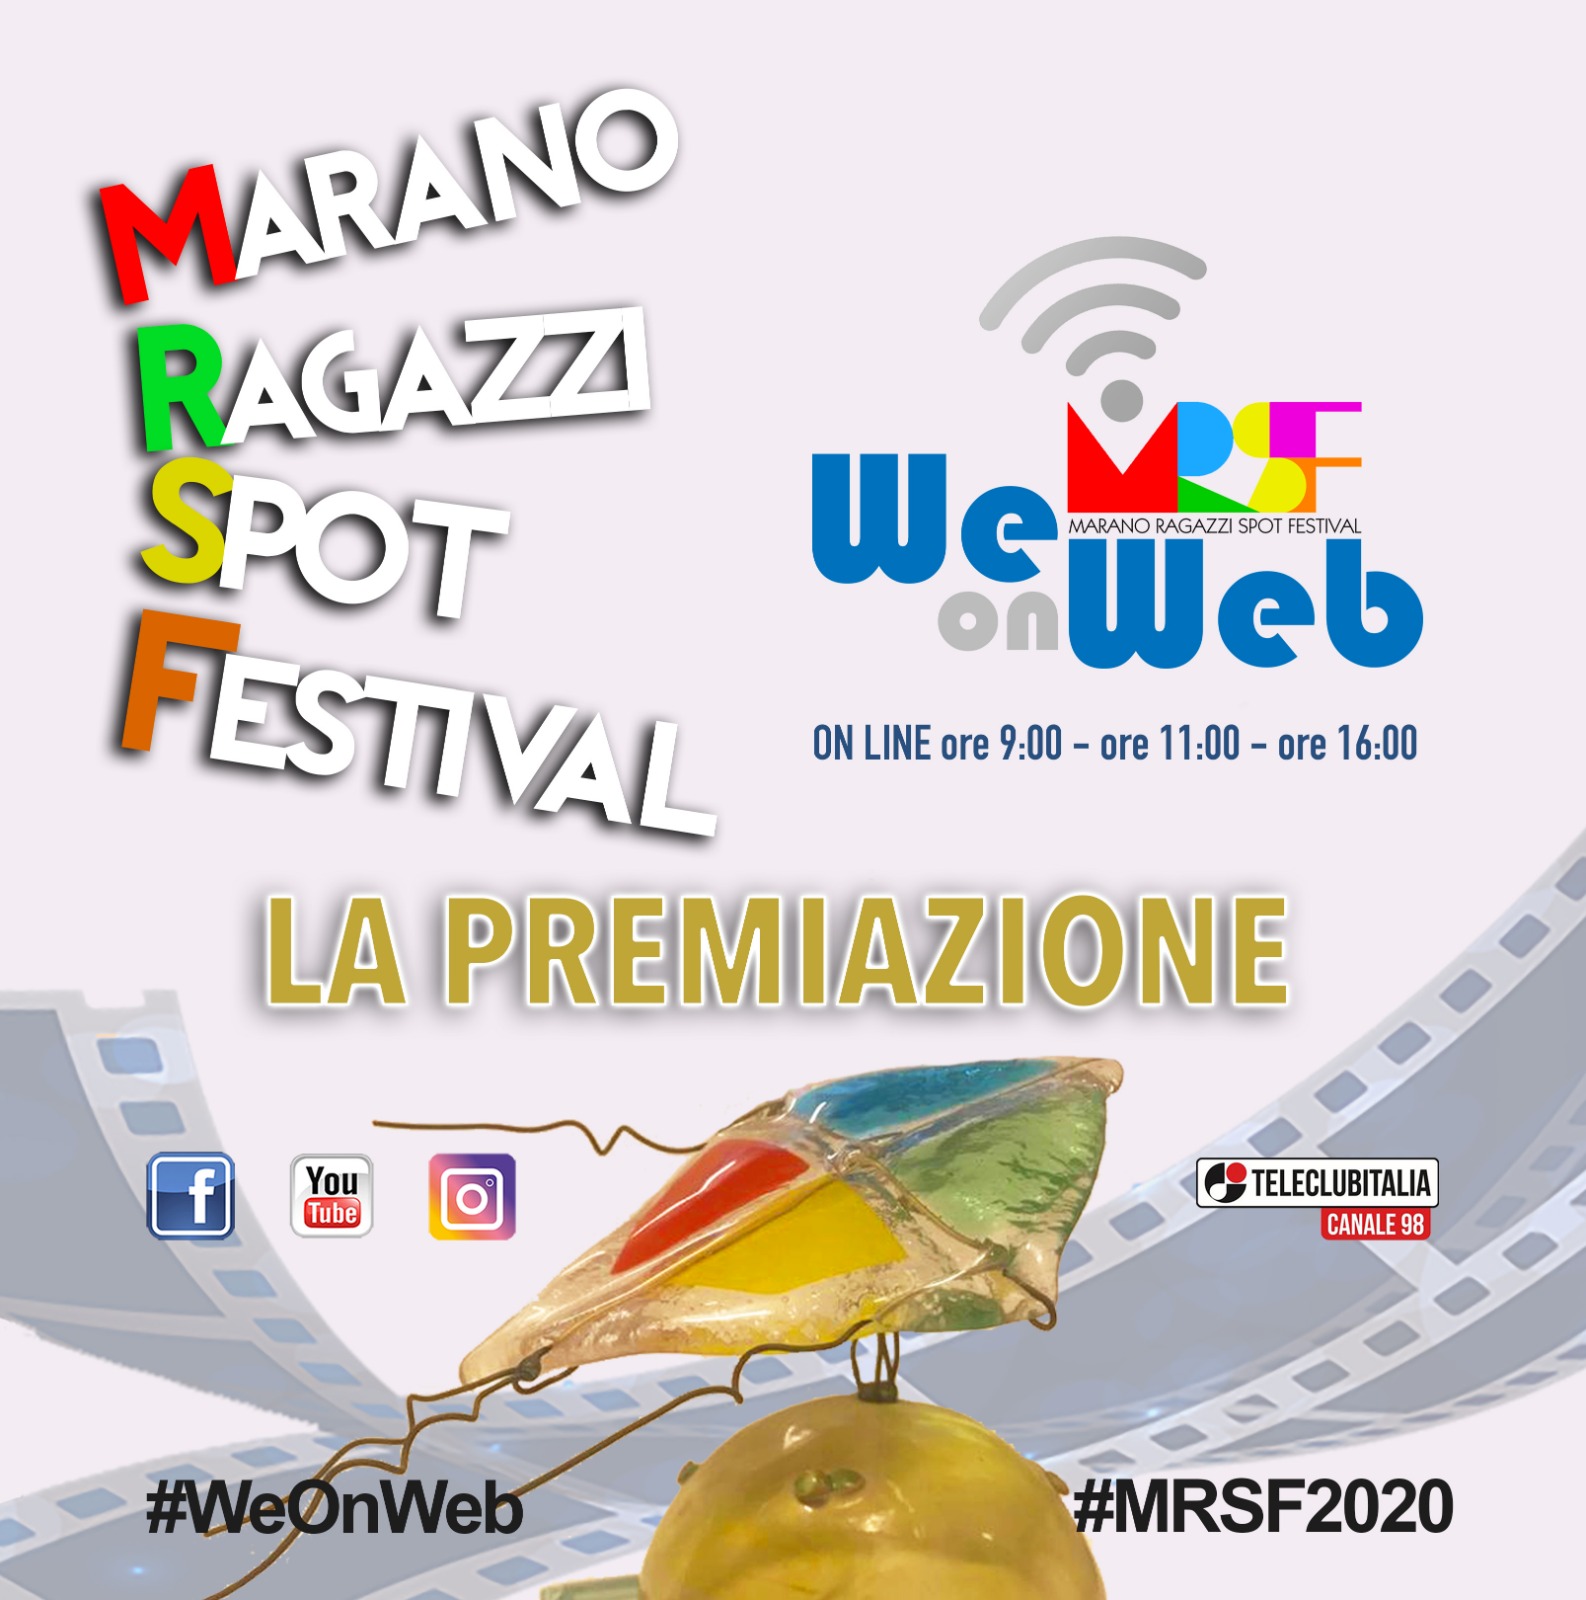 Premiazione Marano Ragazzi Spot Festival